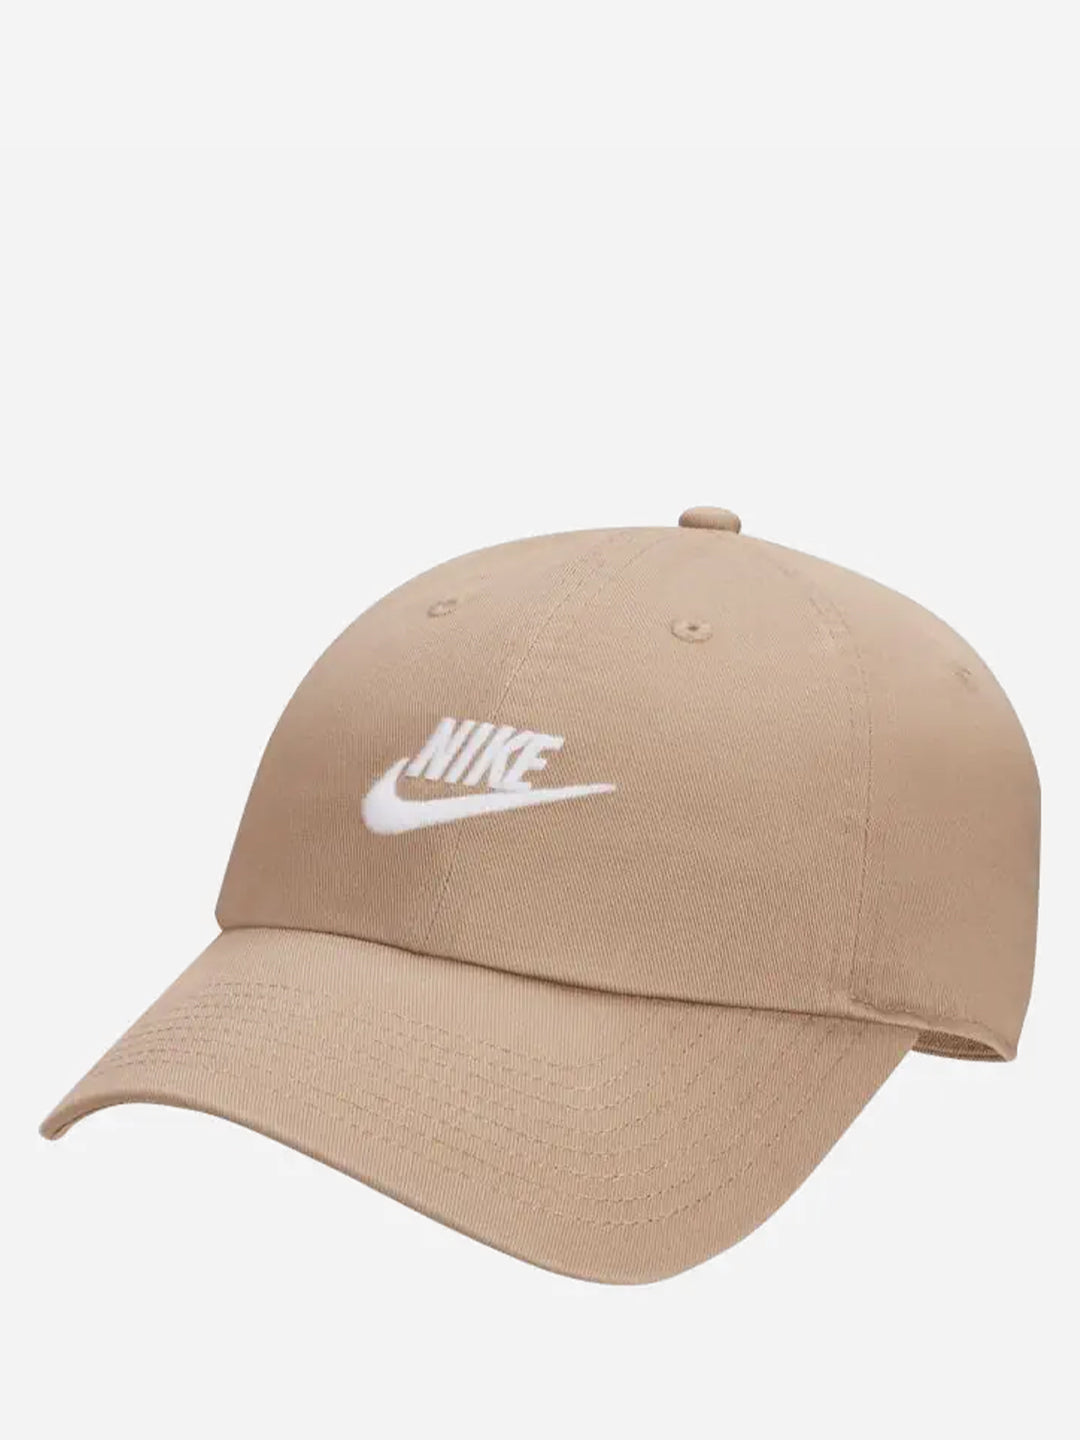 Nike Club cappello beige basic